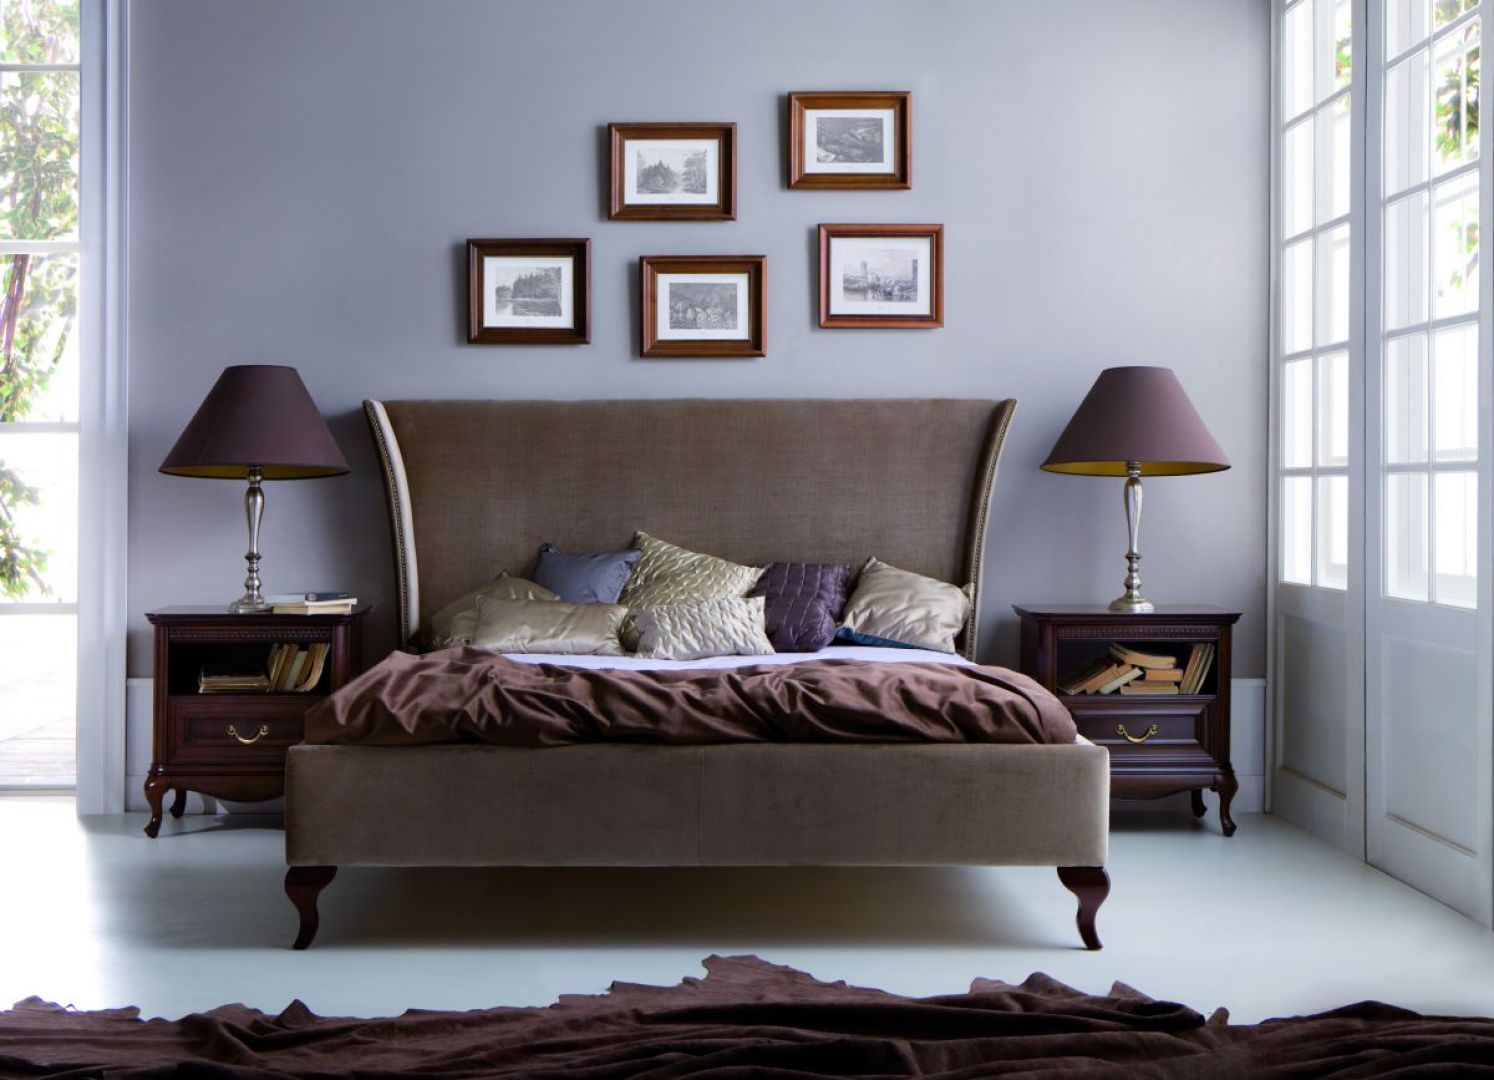 Sypialnia Classic. Stylowe łóżko na wysokich nóżkach to prawdziwa ozdoba wnętrza. Fot. Taranko